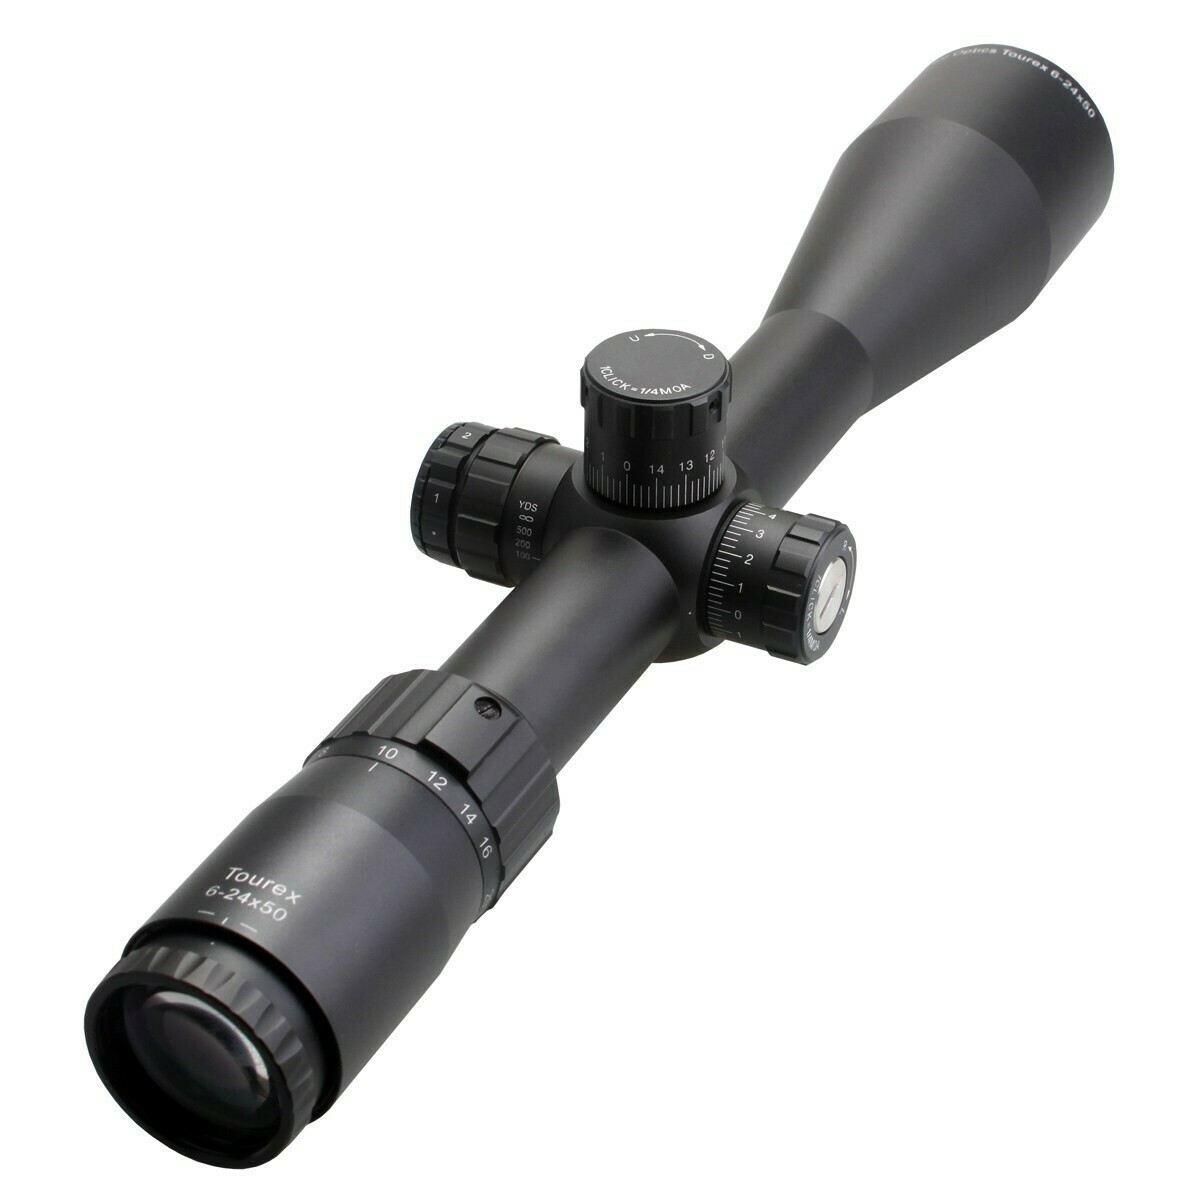 Vector Optics Tourex (SCFF-19) 6-24x50 FFP
Rifle Scope